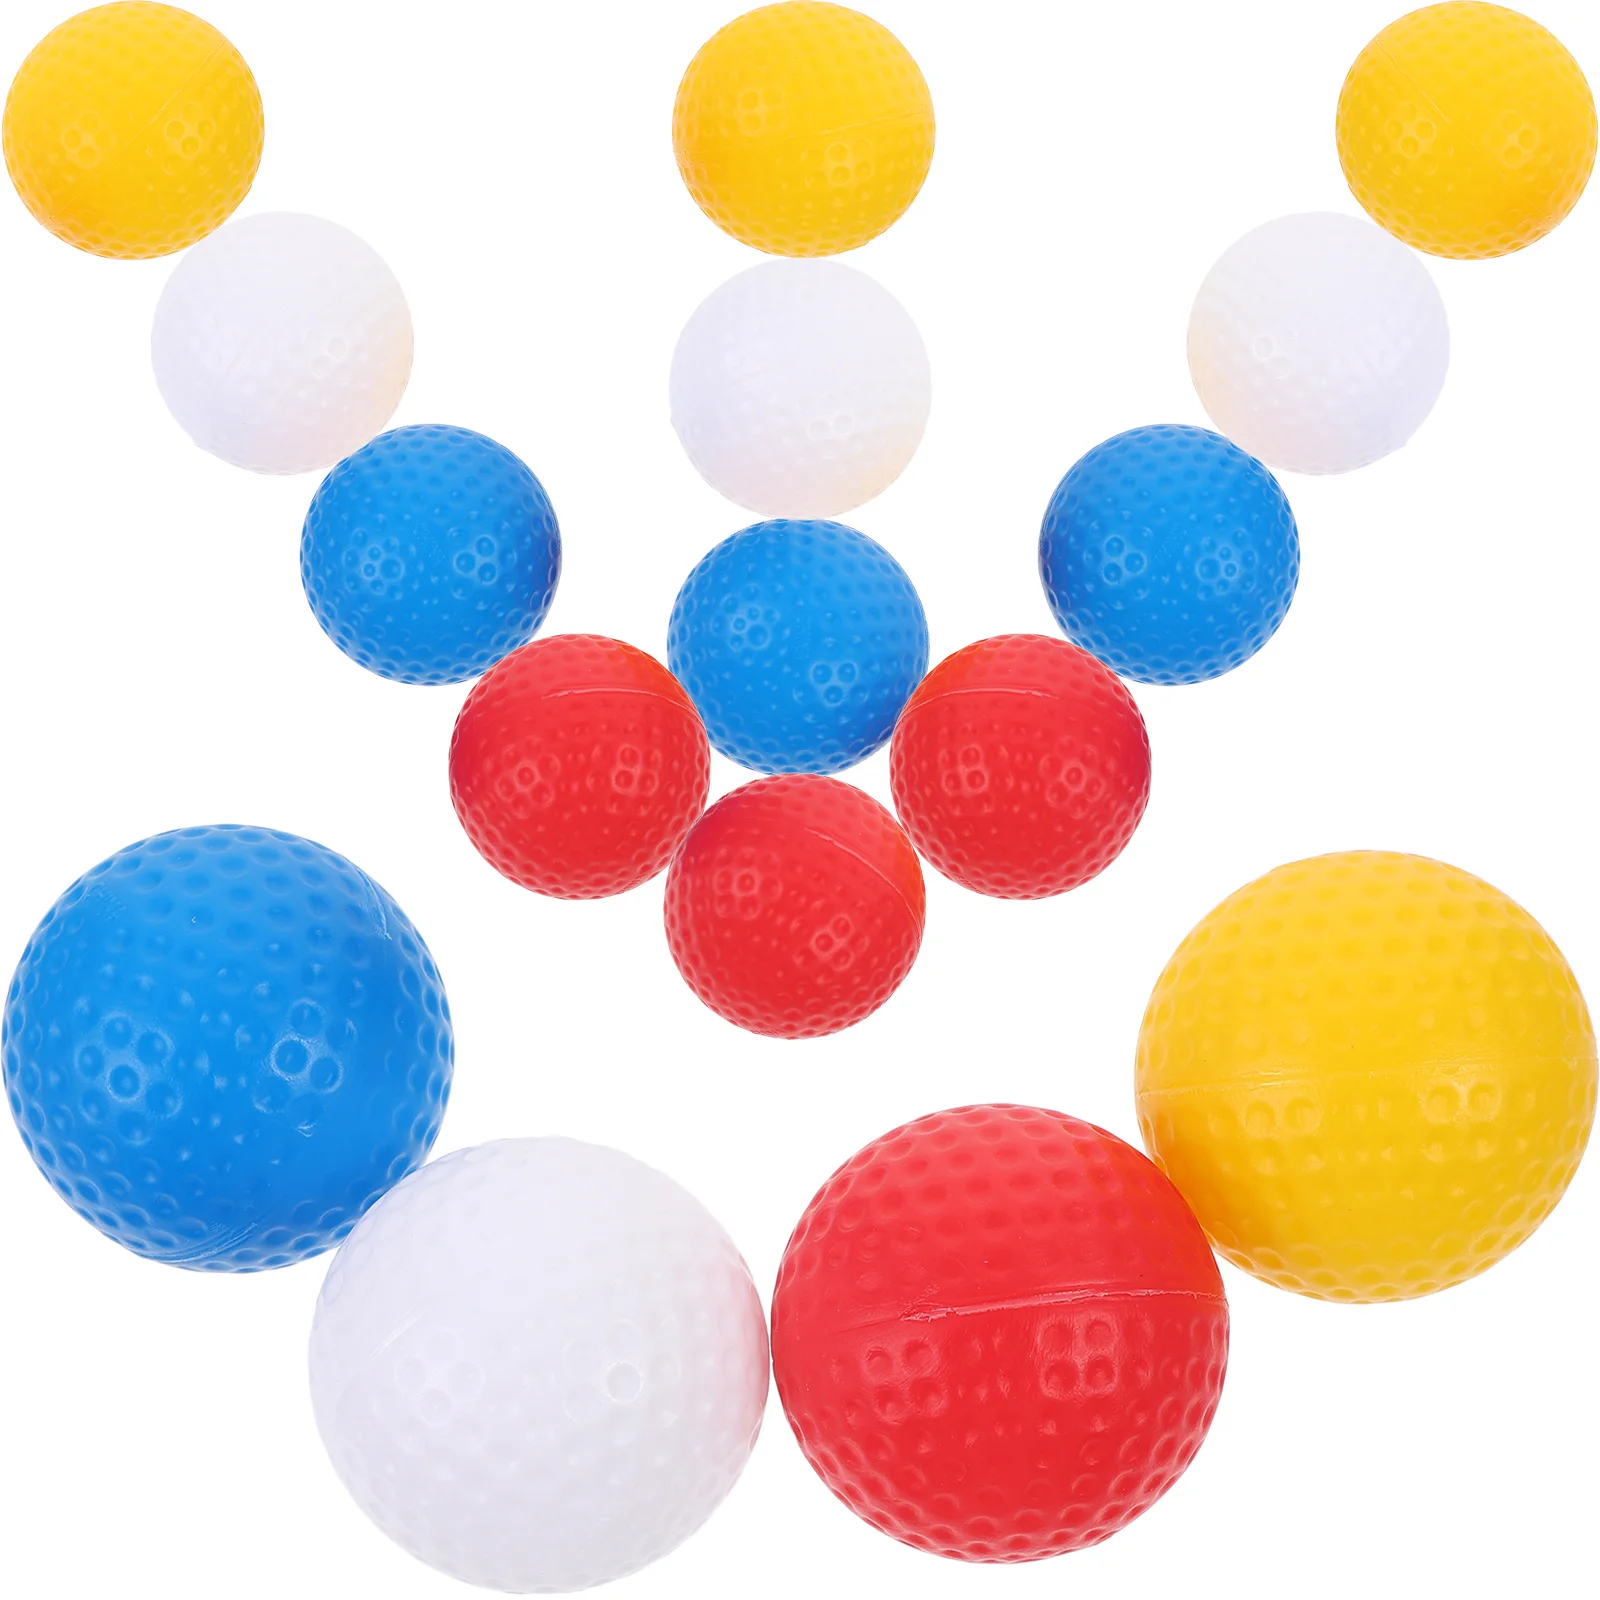 цена Мячи для игры в гольф, Цветные мячи для гольфа, маленькие мячи для гольфа, портативные мячи для игры в гольф